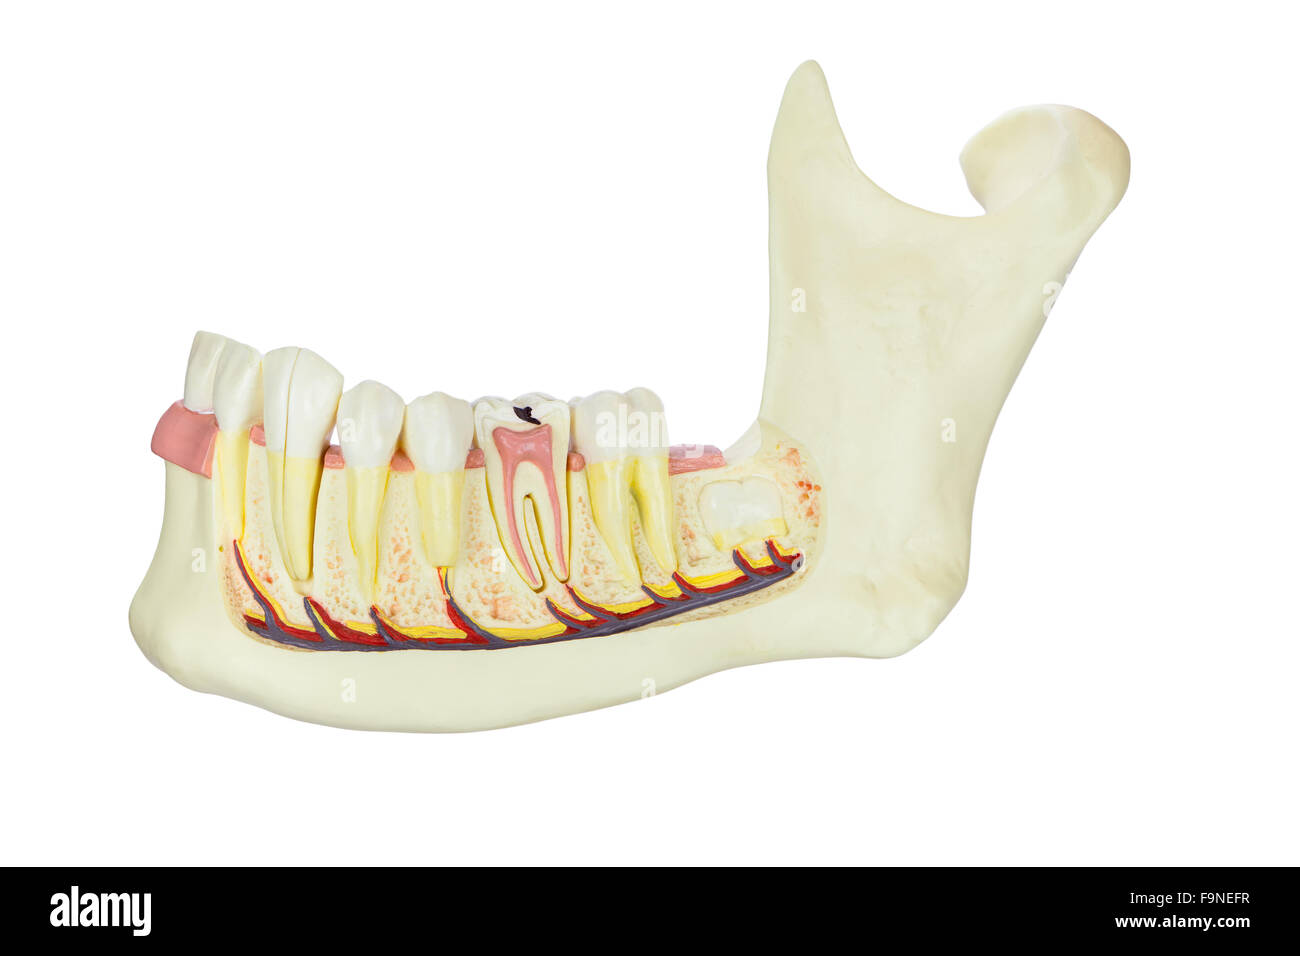 Modello di mandibola umana con denti isolati su sfondo bianco Foto Stock